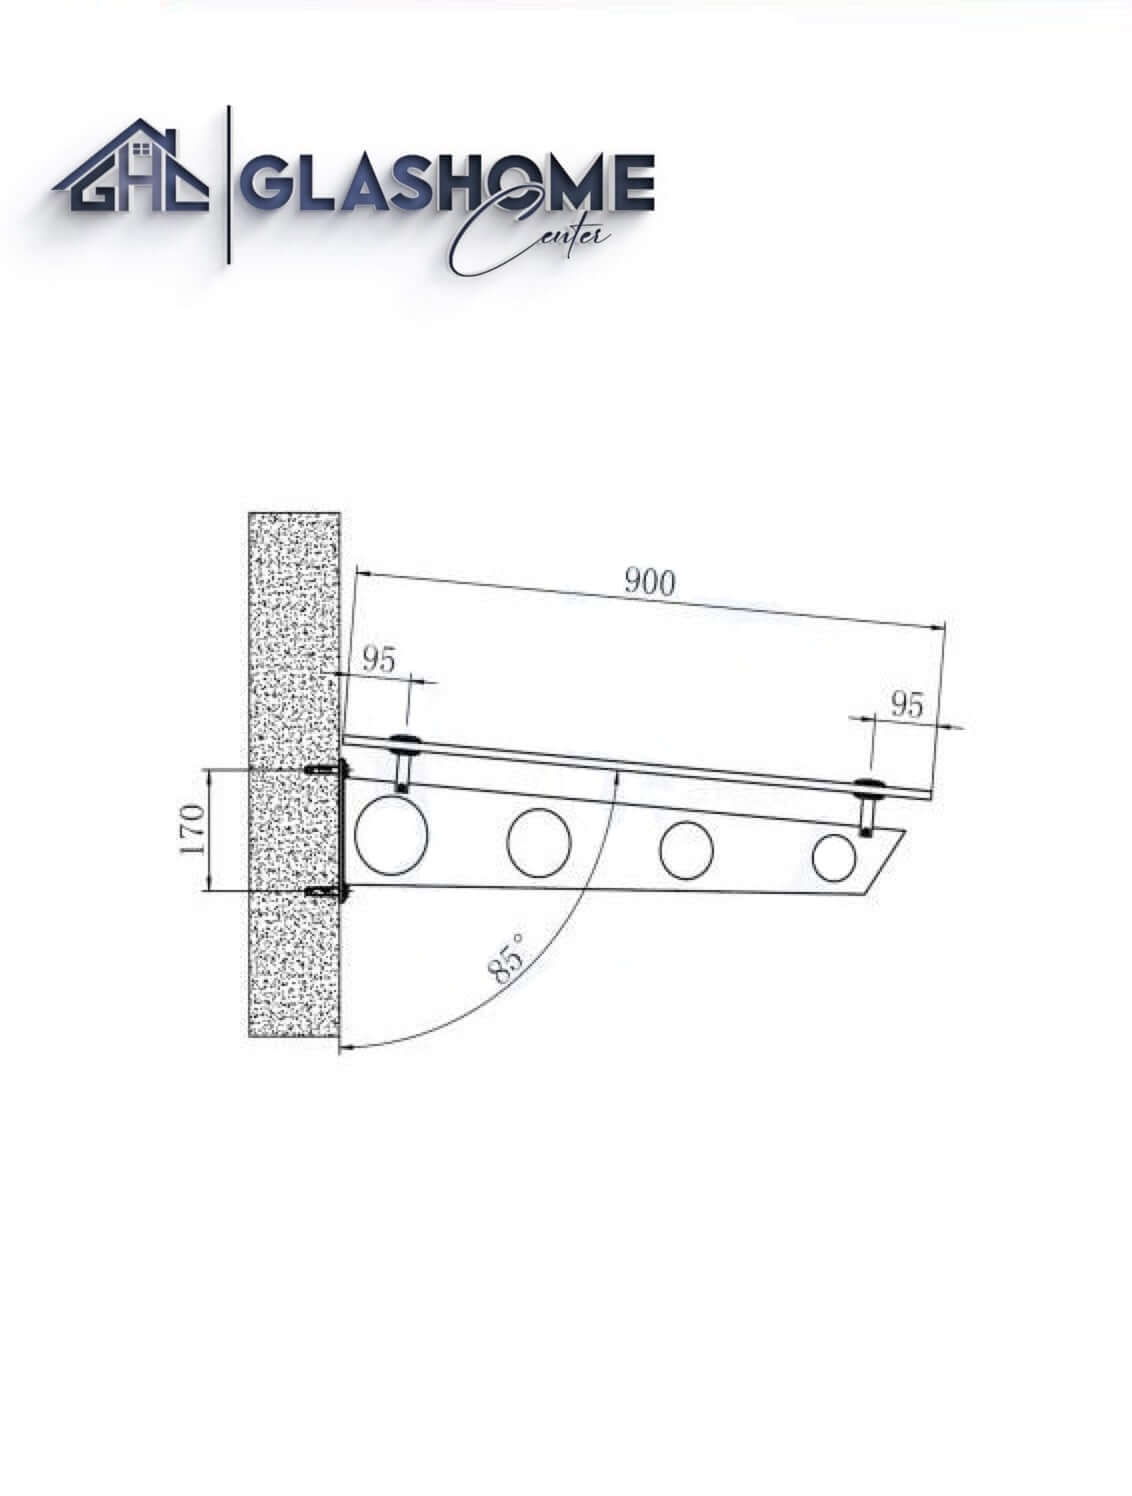 GlasHomeCenter - Glasvordach - Milchglas - 230x90cm - 13,1mm VSG - incl. 3 varianti Edelstahlhalterungen nere "Stoccolma"